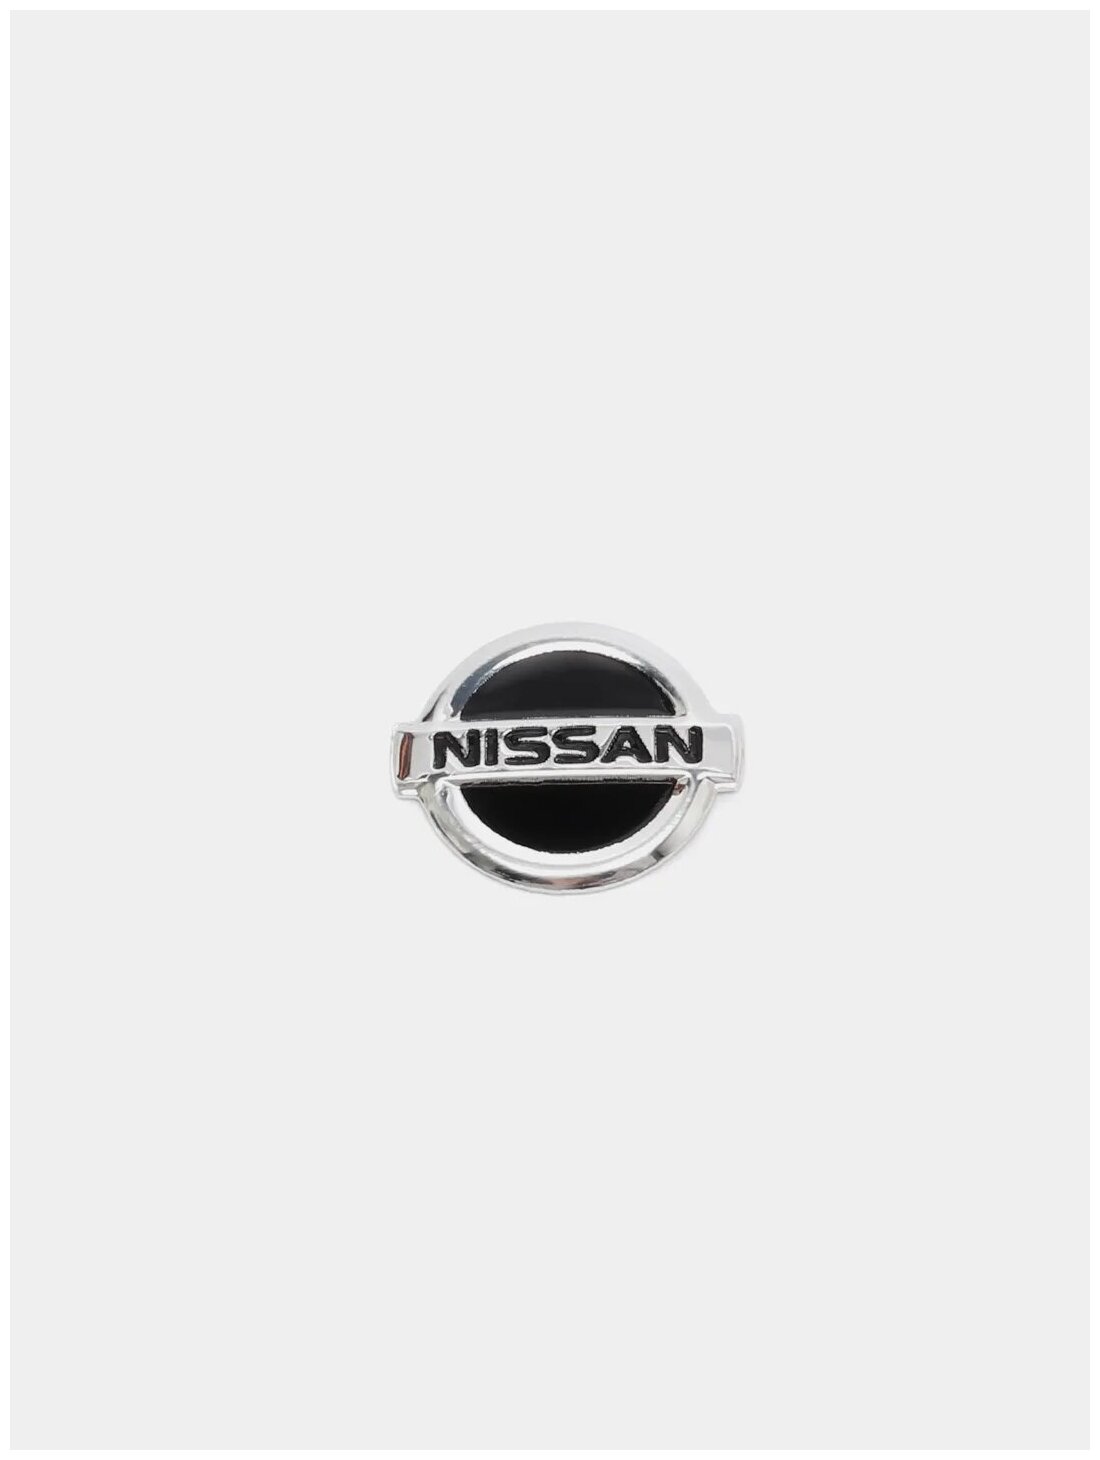 Эмблема Nissan на ключ зажигания 13.3 * 11.4 мм